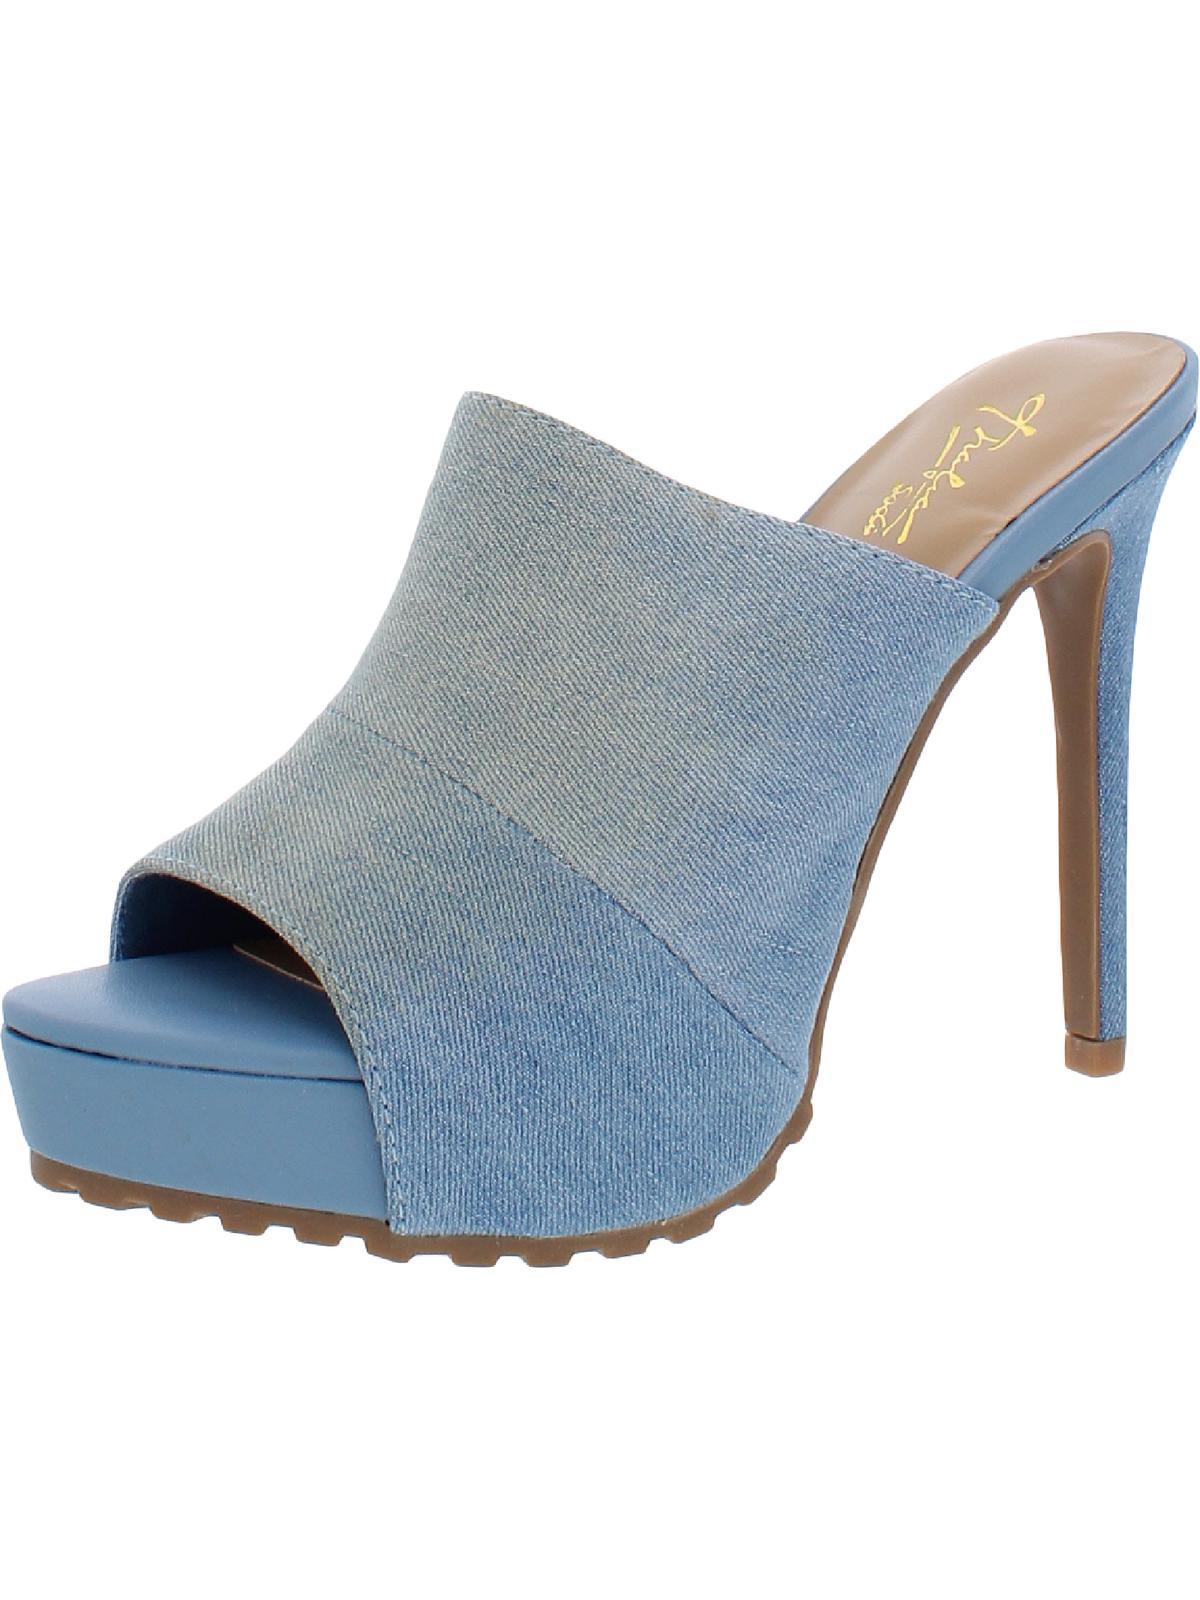 Thalia Sodi Cindie Platforms Peep-toe Mule Sandals in Blue | Lyst